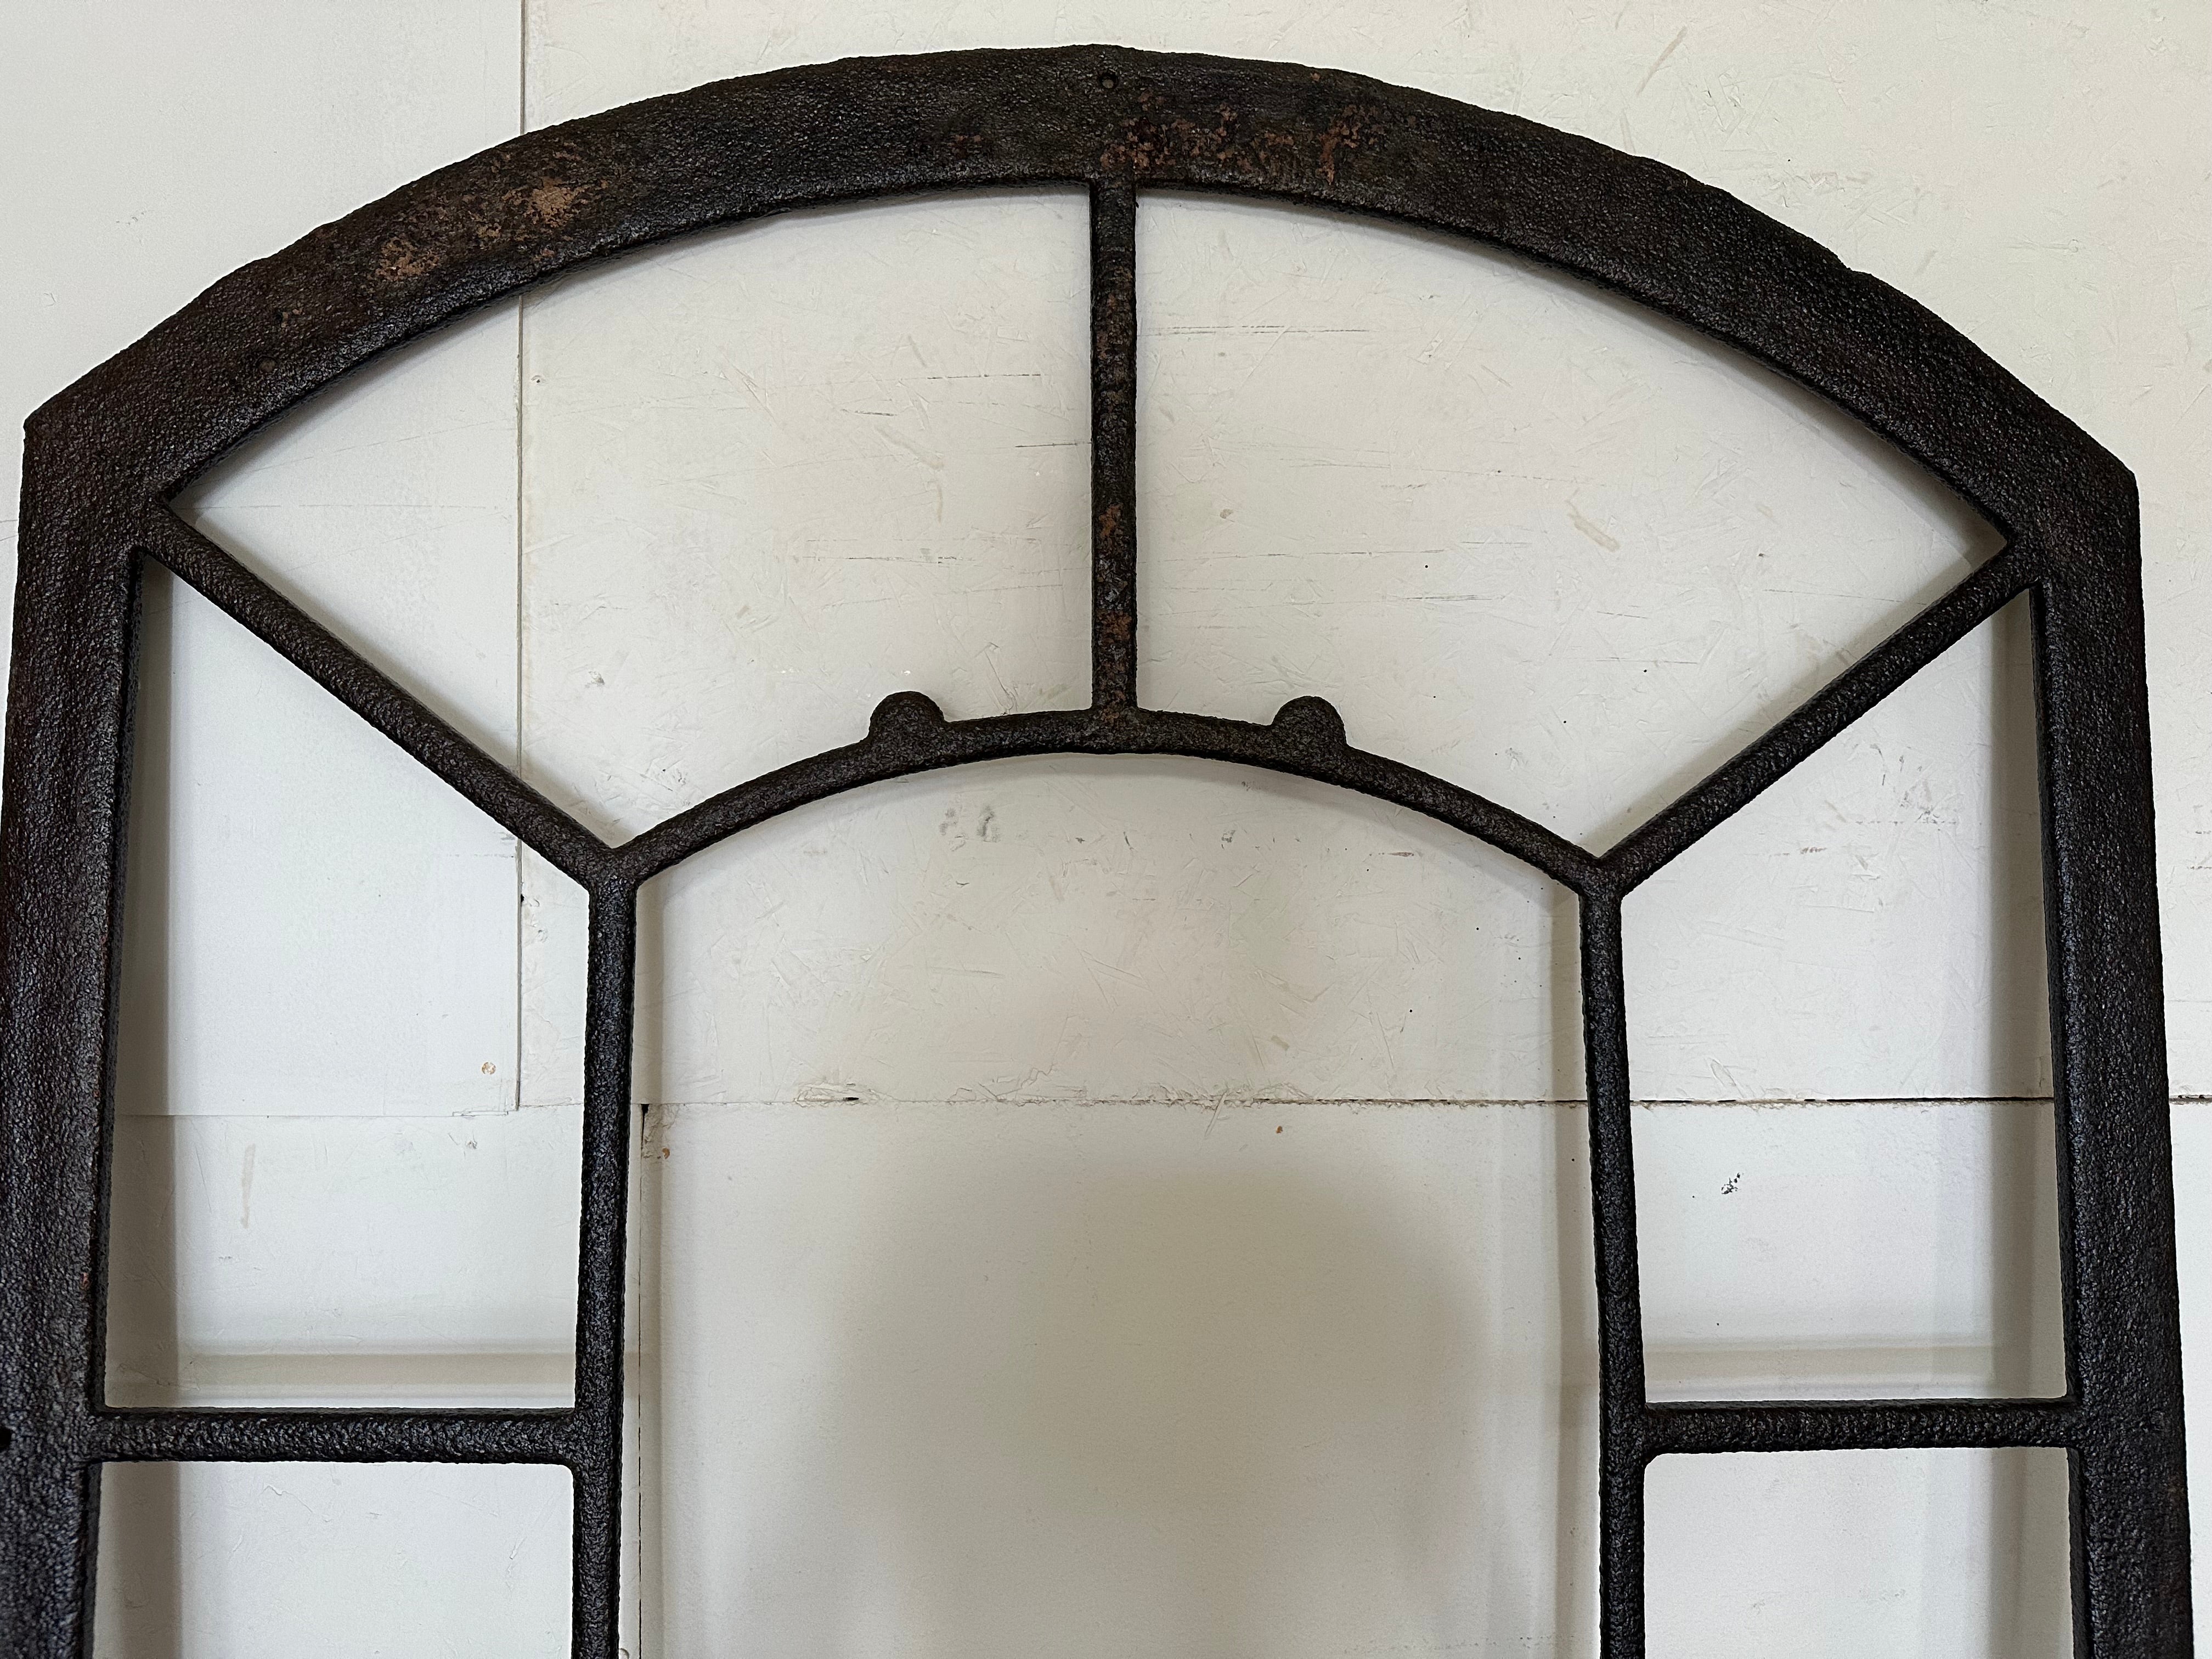 Un élégant cadre de fenêtre ou miroir mural néo-classique Tuilleries Orangerie avec un sommet arqué fait à la main en fonte antique cadre qui a été une fois une fenêtre d'un château français.
Insérez les panneaux miroirs de votre choix pour créer la